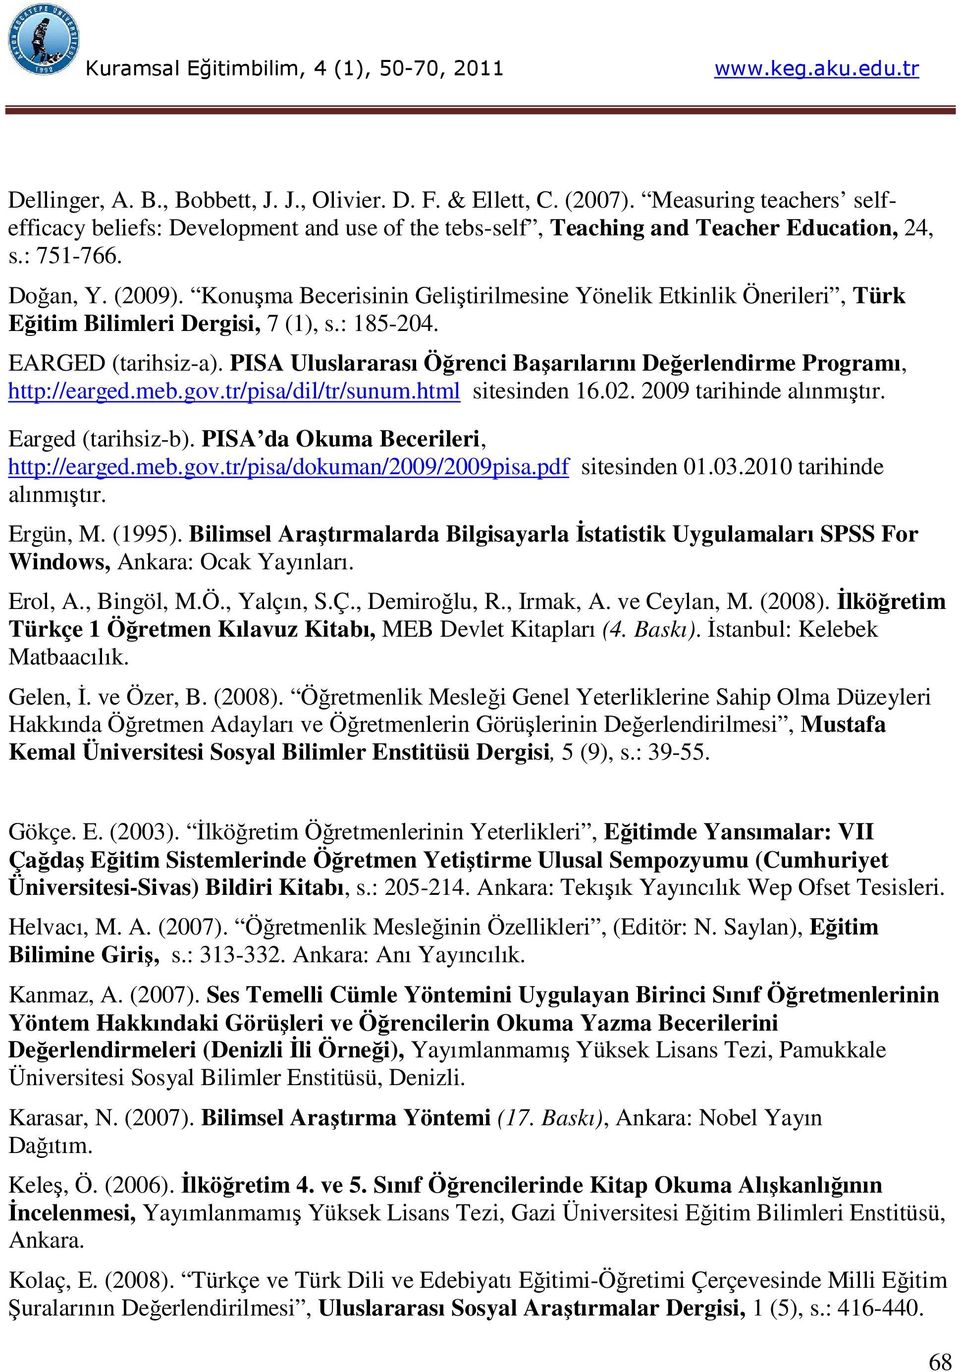 PISA Uluslararası Öğrenci Başarılarını Değerlendirme Programı, http://earged.meb.gov.tr/pisa/dil/tr/sunum.html sitesinden 16.02. 2009 tarihinde alınmıştır. Earged (tarihsiz-b).